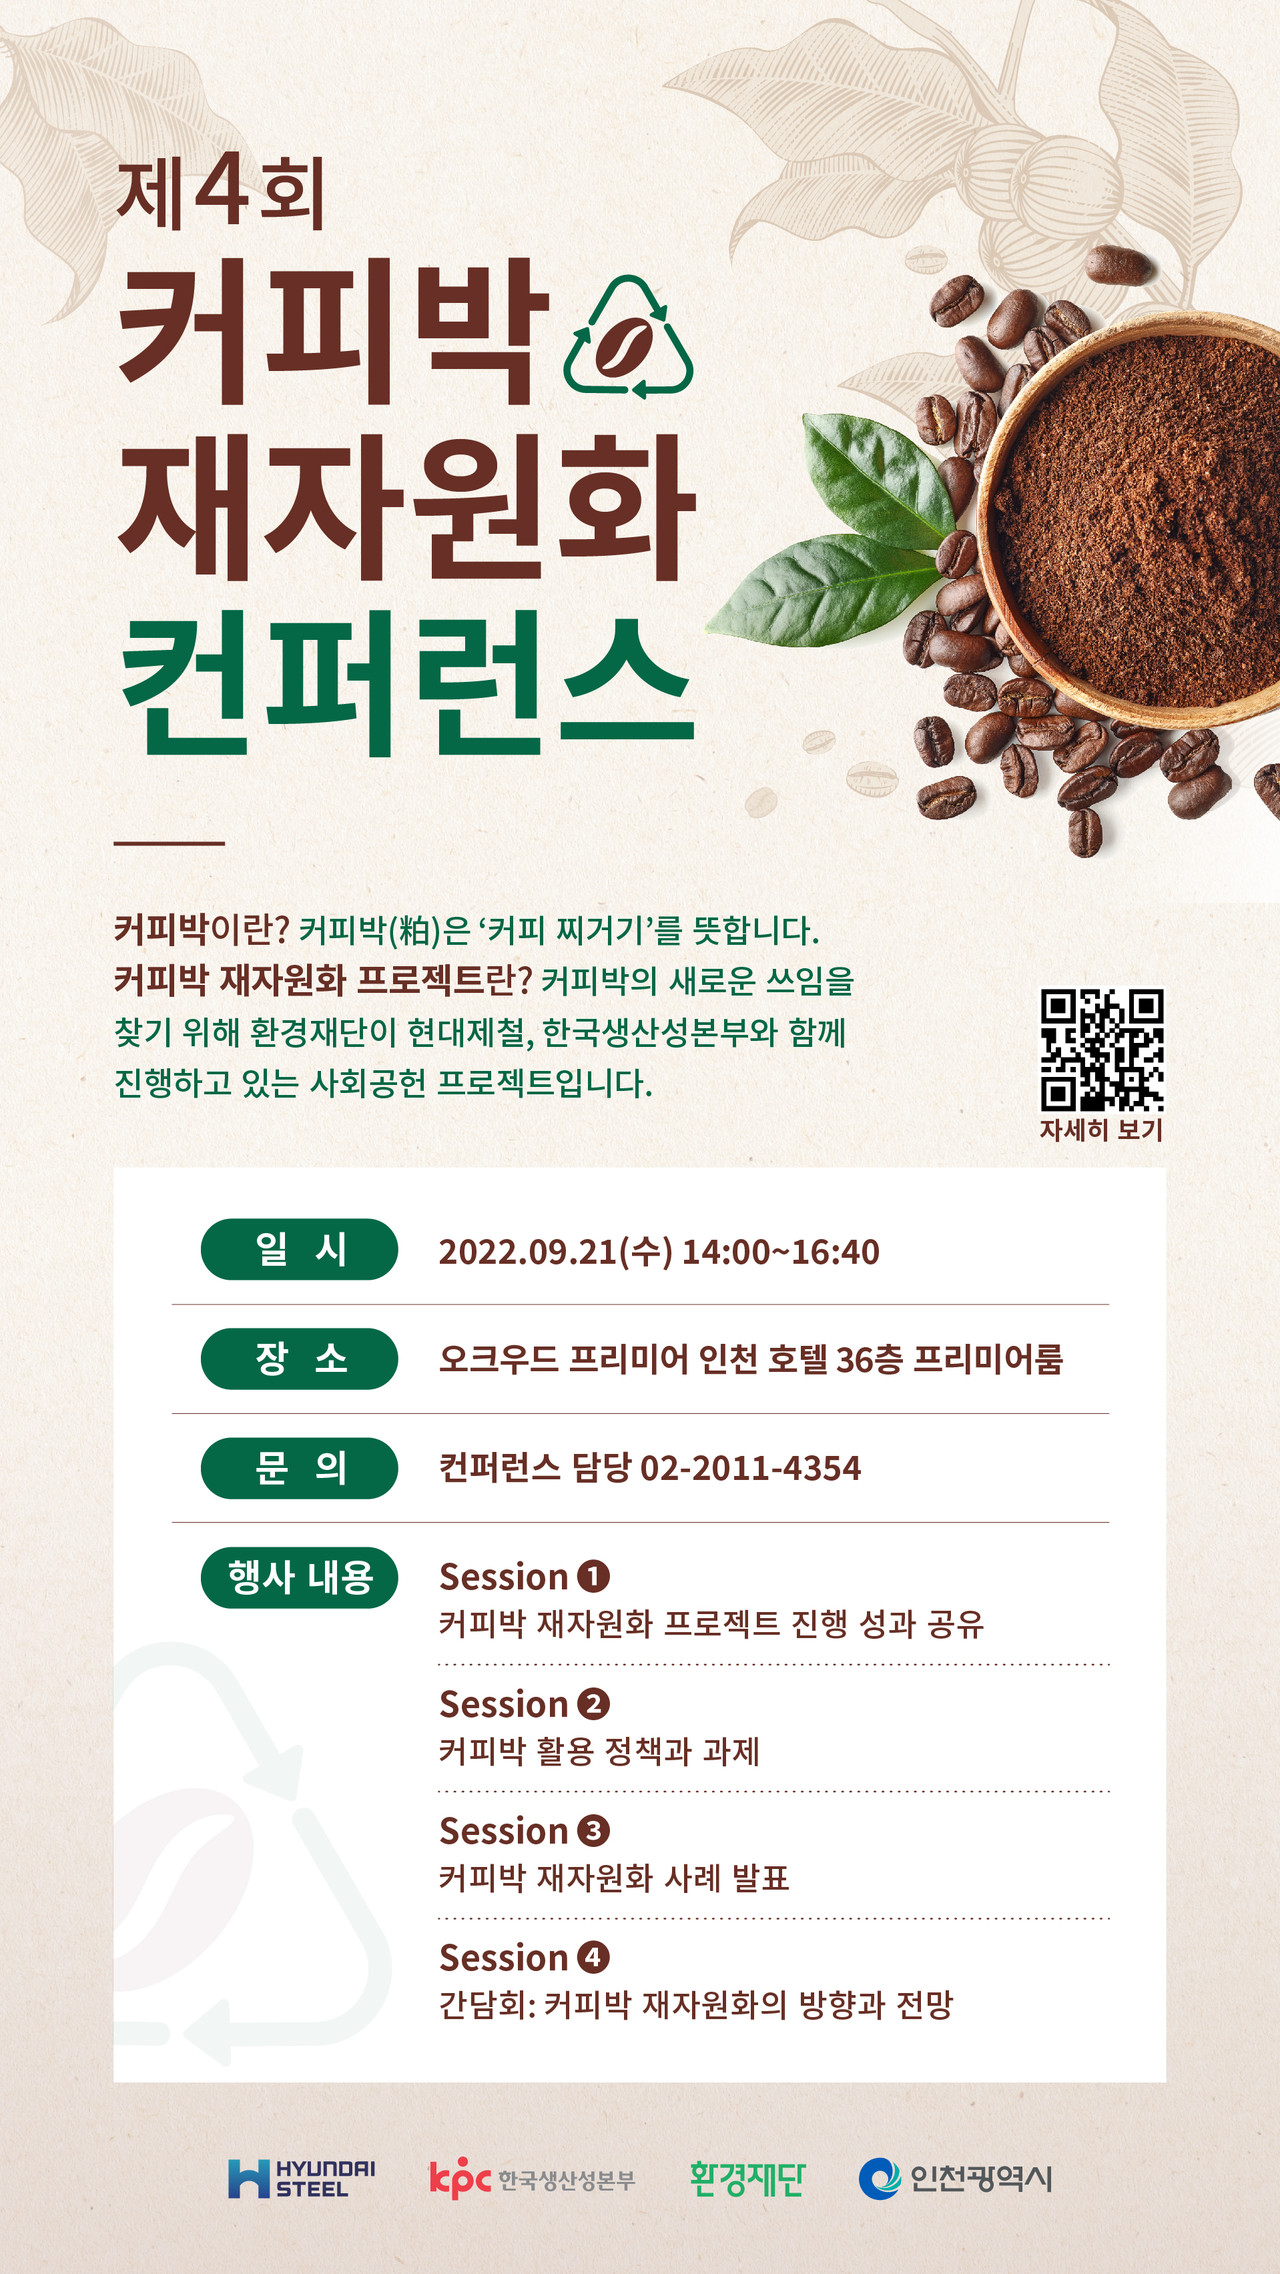 환경재단은 오는 9월 21일 오크우드 프리미어 인천에서 '제4회 커피박 재자원화 컨퍼런스'를 개최한다고 밝혔다.